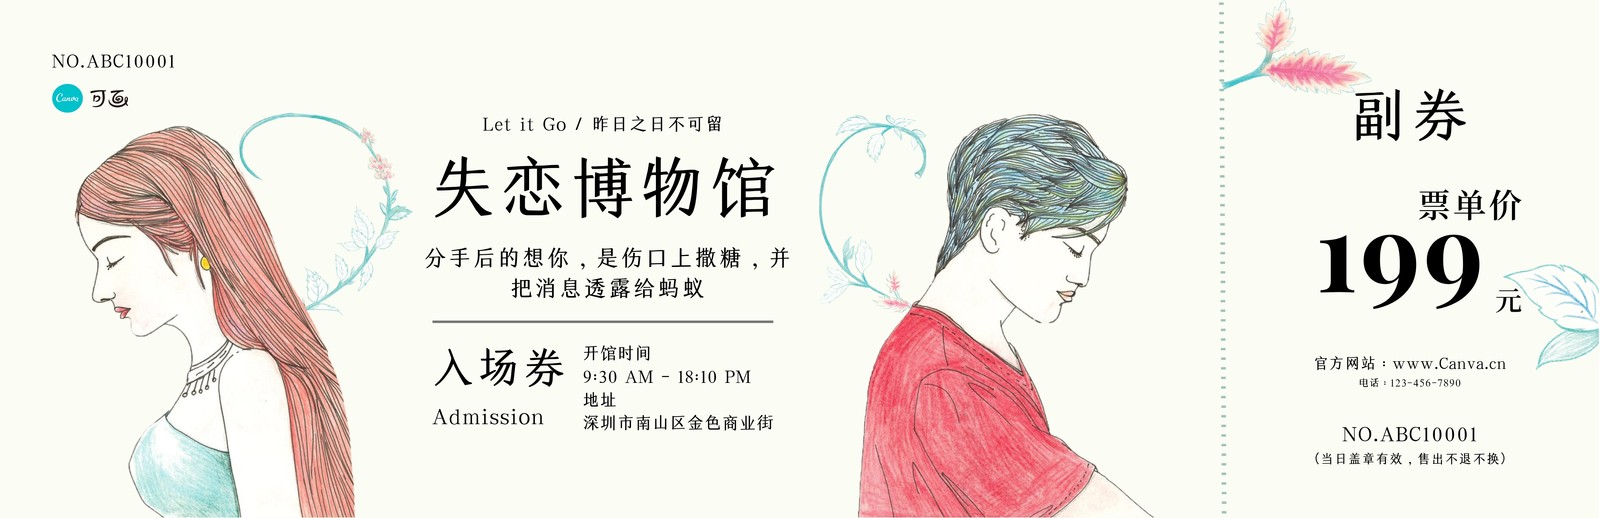 绿色失恋博物馆手绘个人活动中文门票 模板 Canva可画